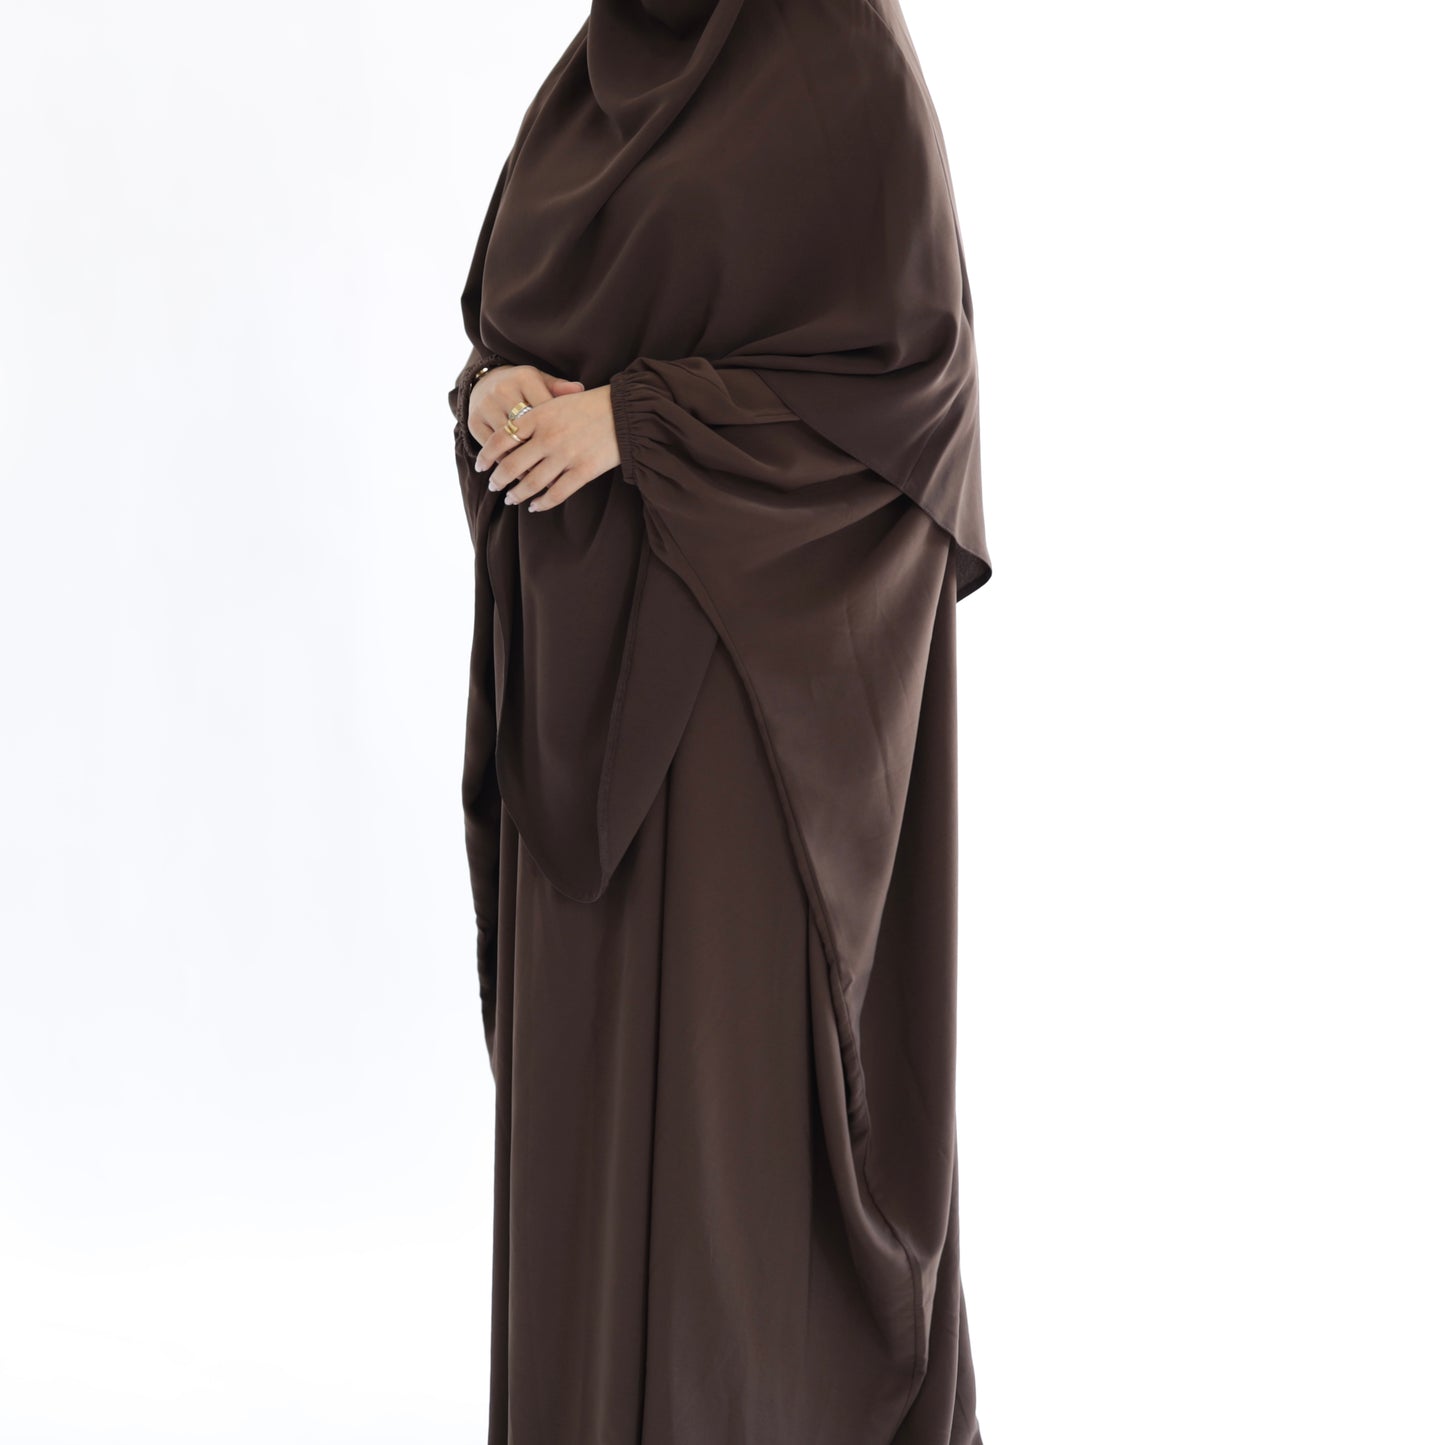 Choc Brown Khimar with Niqab Ties